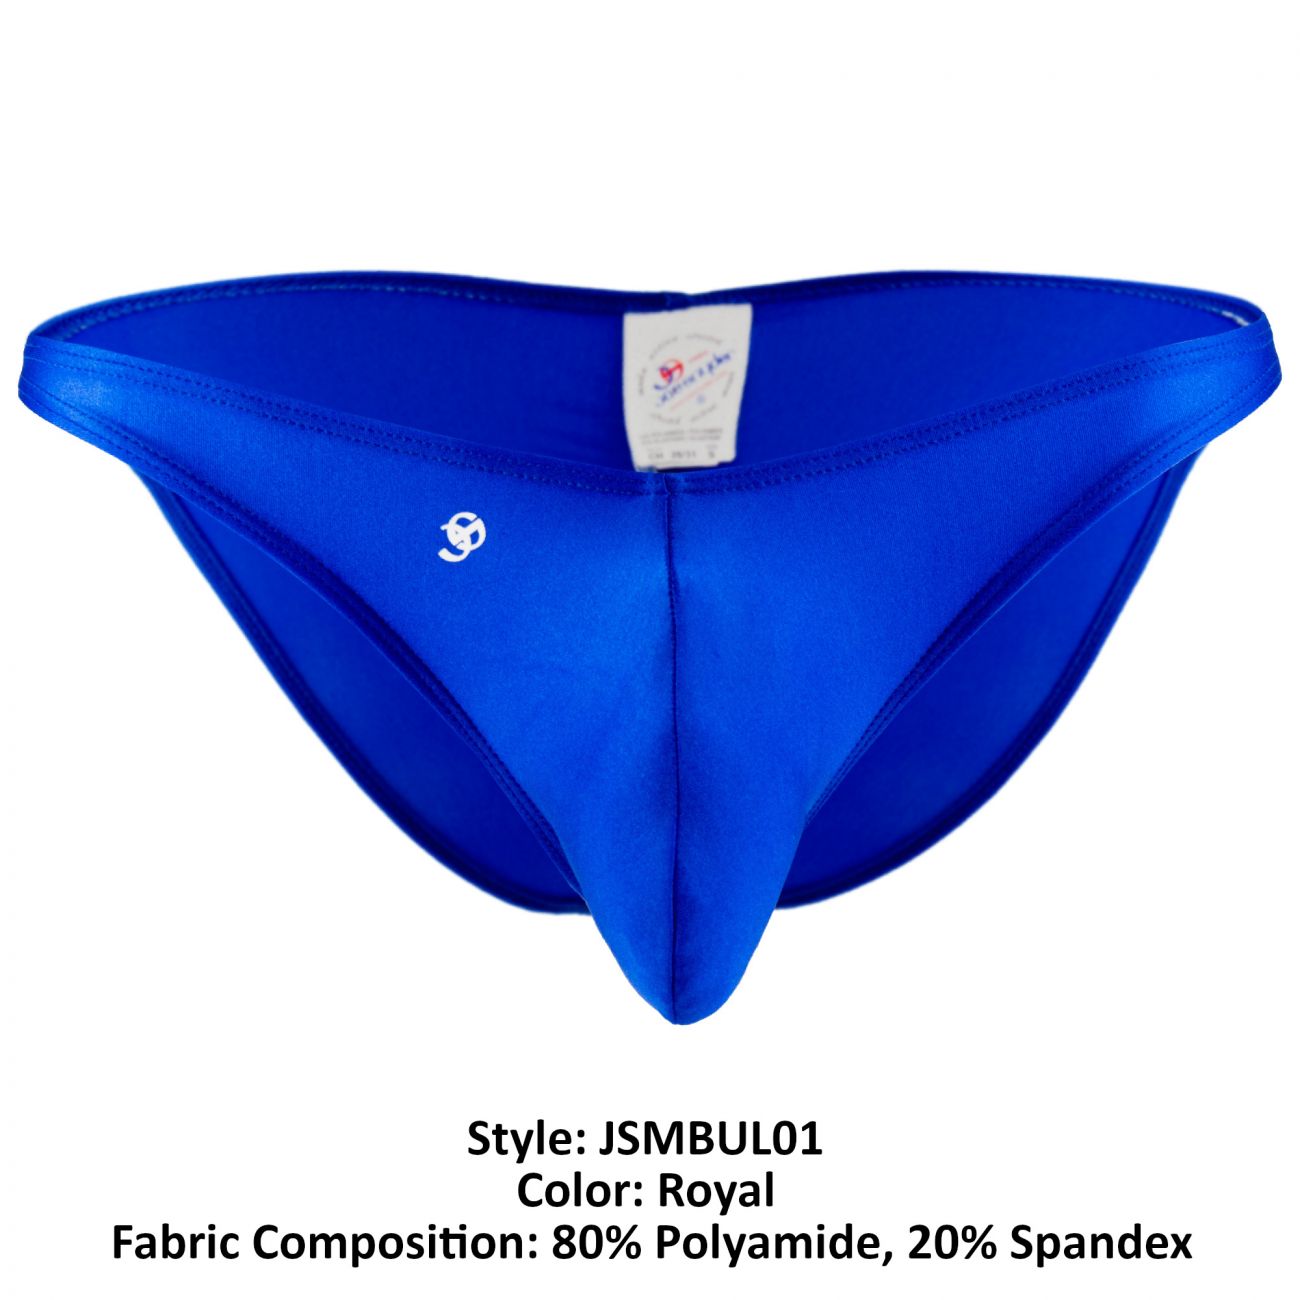 Joe Snyder JSMBUL01 Maxibulge Bikini Royal